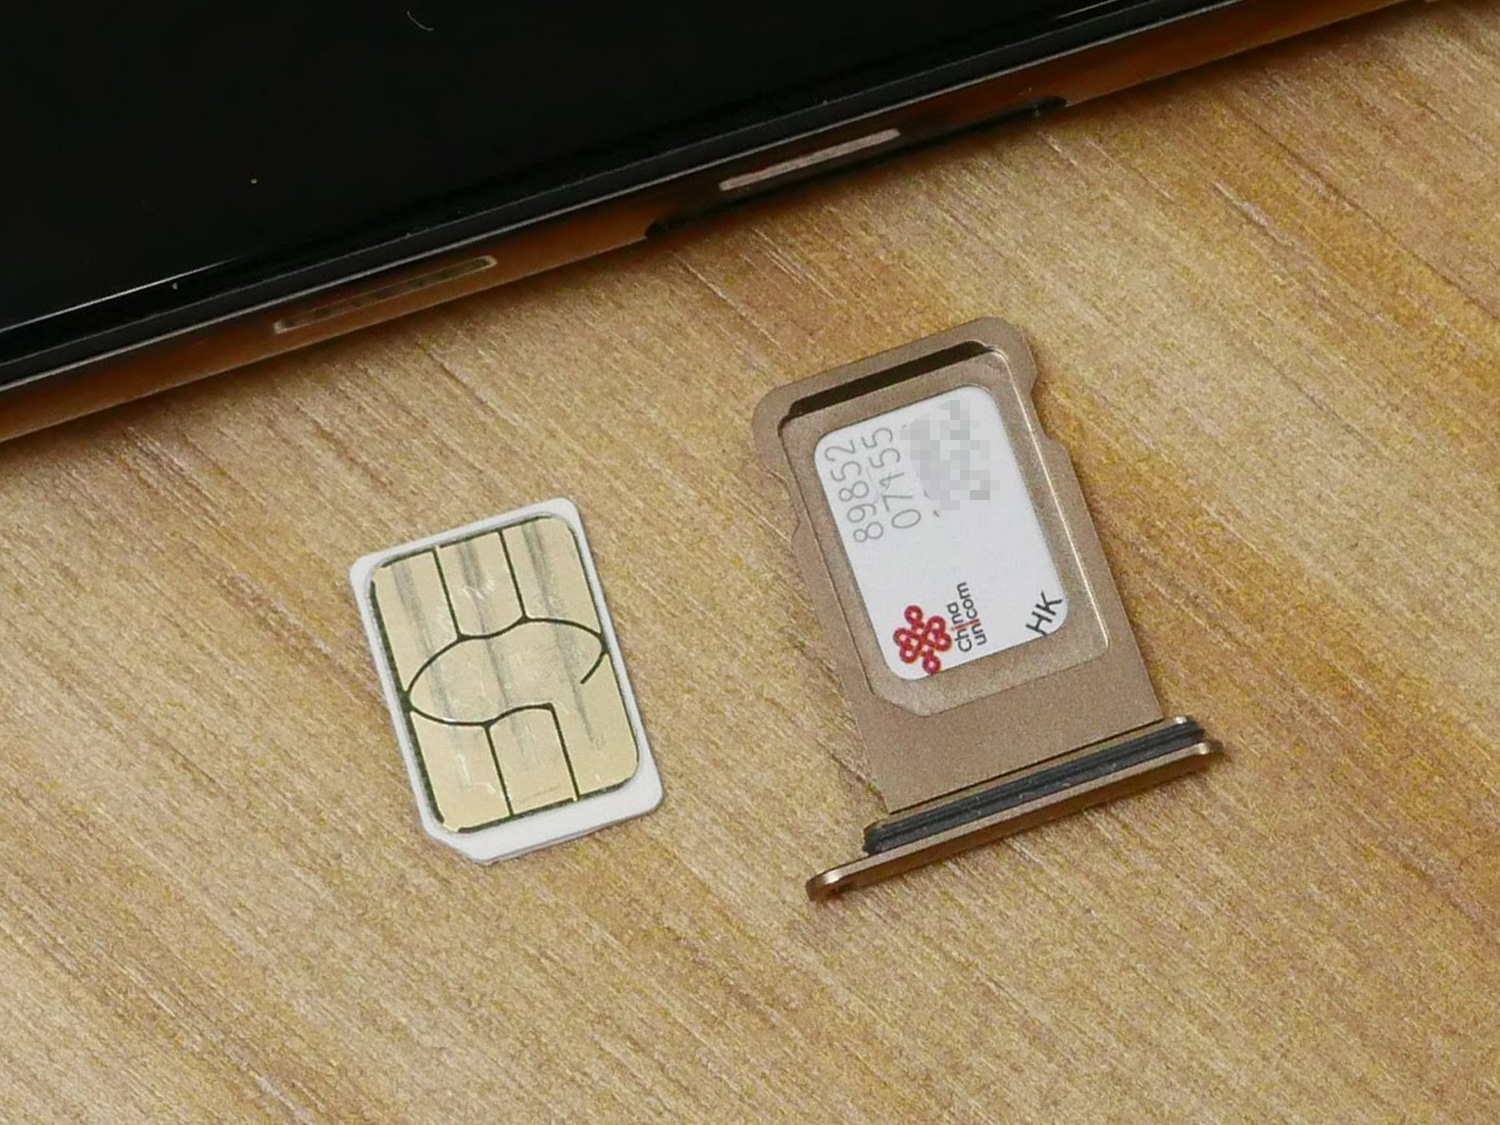 SIMカードが2枚入るiPhone XS Max香港版でDSDSを試す - Engadget 日本版